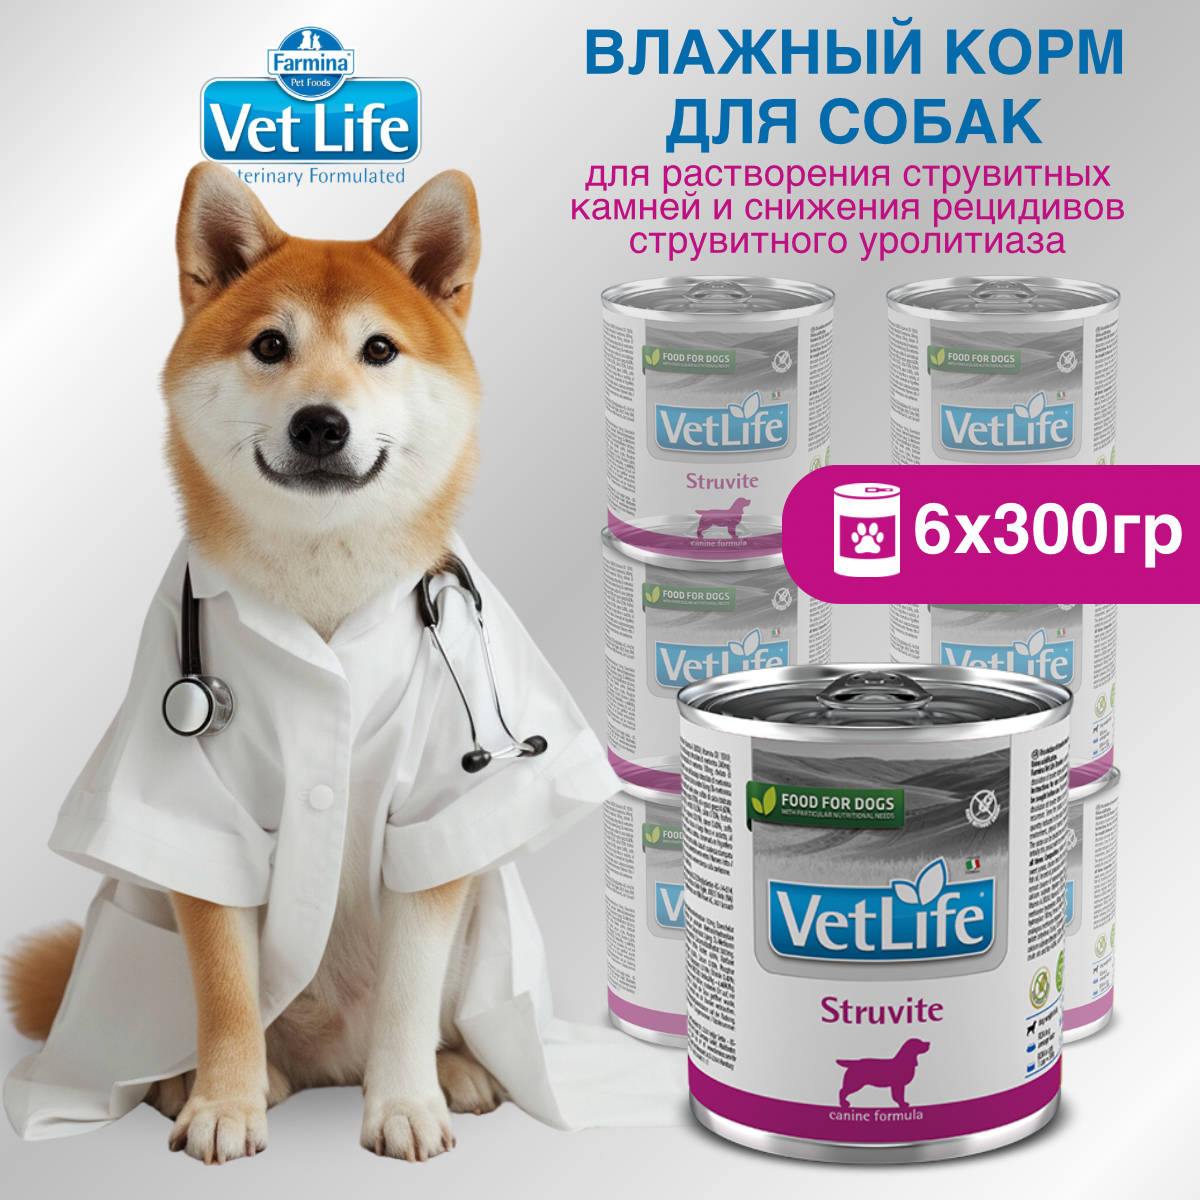 Набор. Влажный корм Farmina Vet Life Struvite для собак при струвитных уролитах, 300г, 6 шт